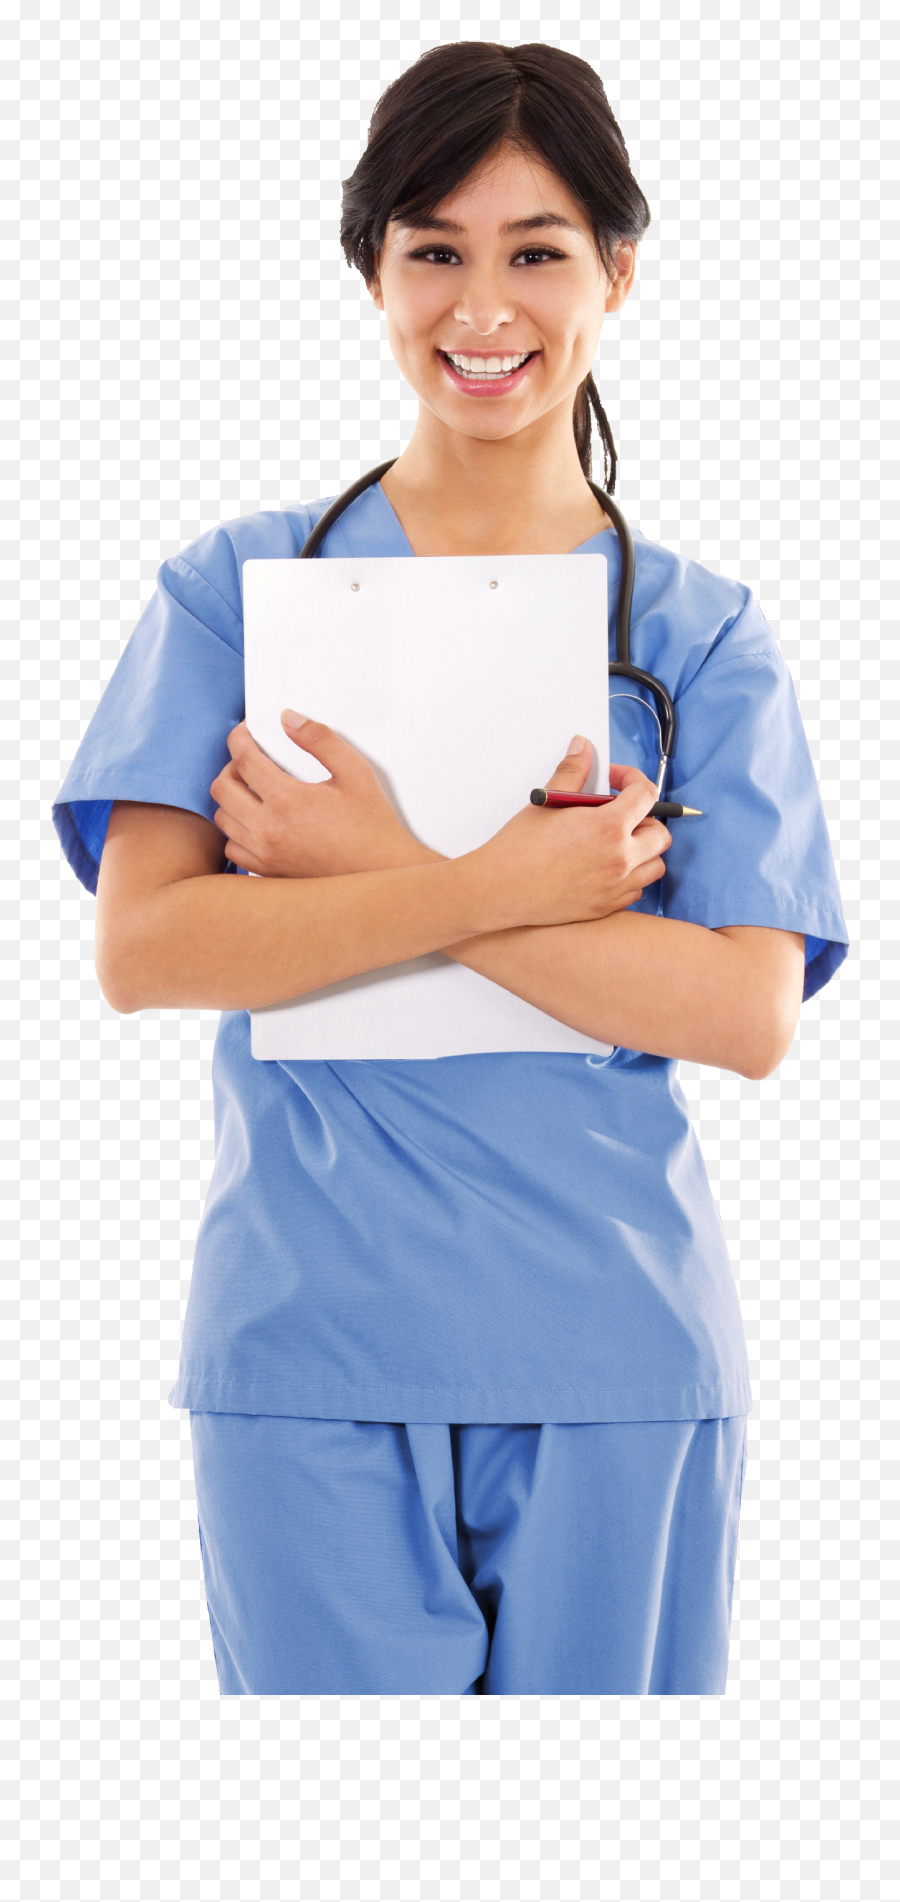 Download Nurse Png Image For Free - Female Nurse Png,Nurse Png